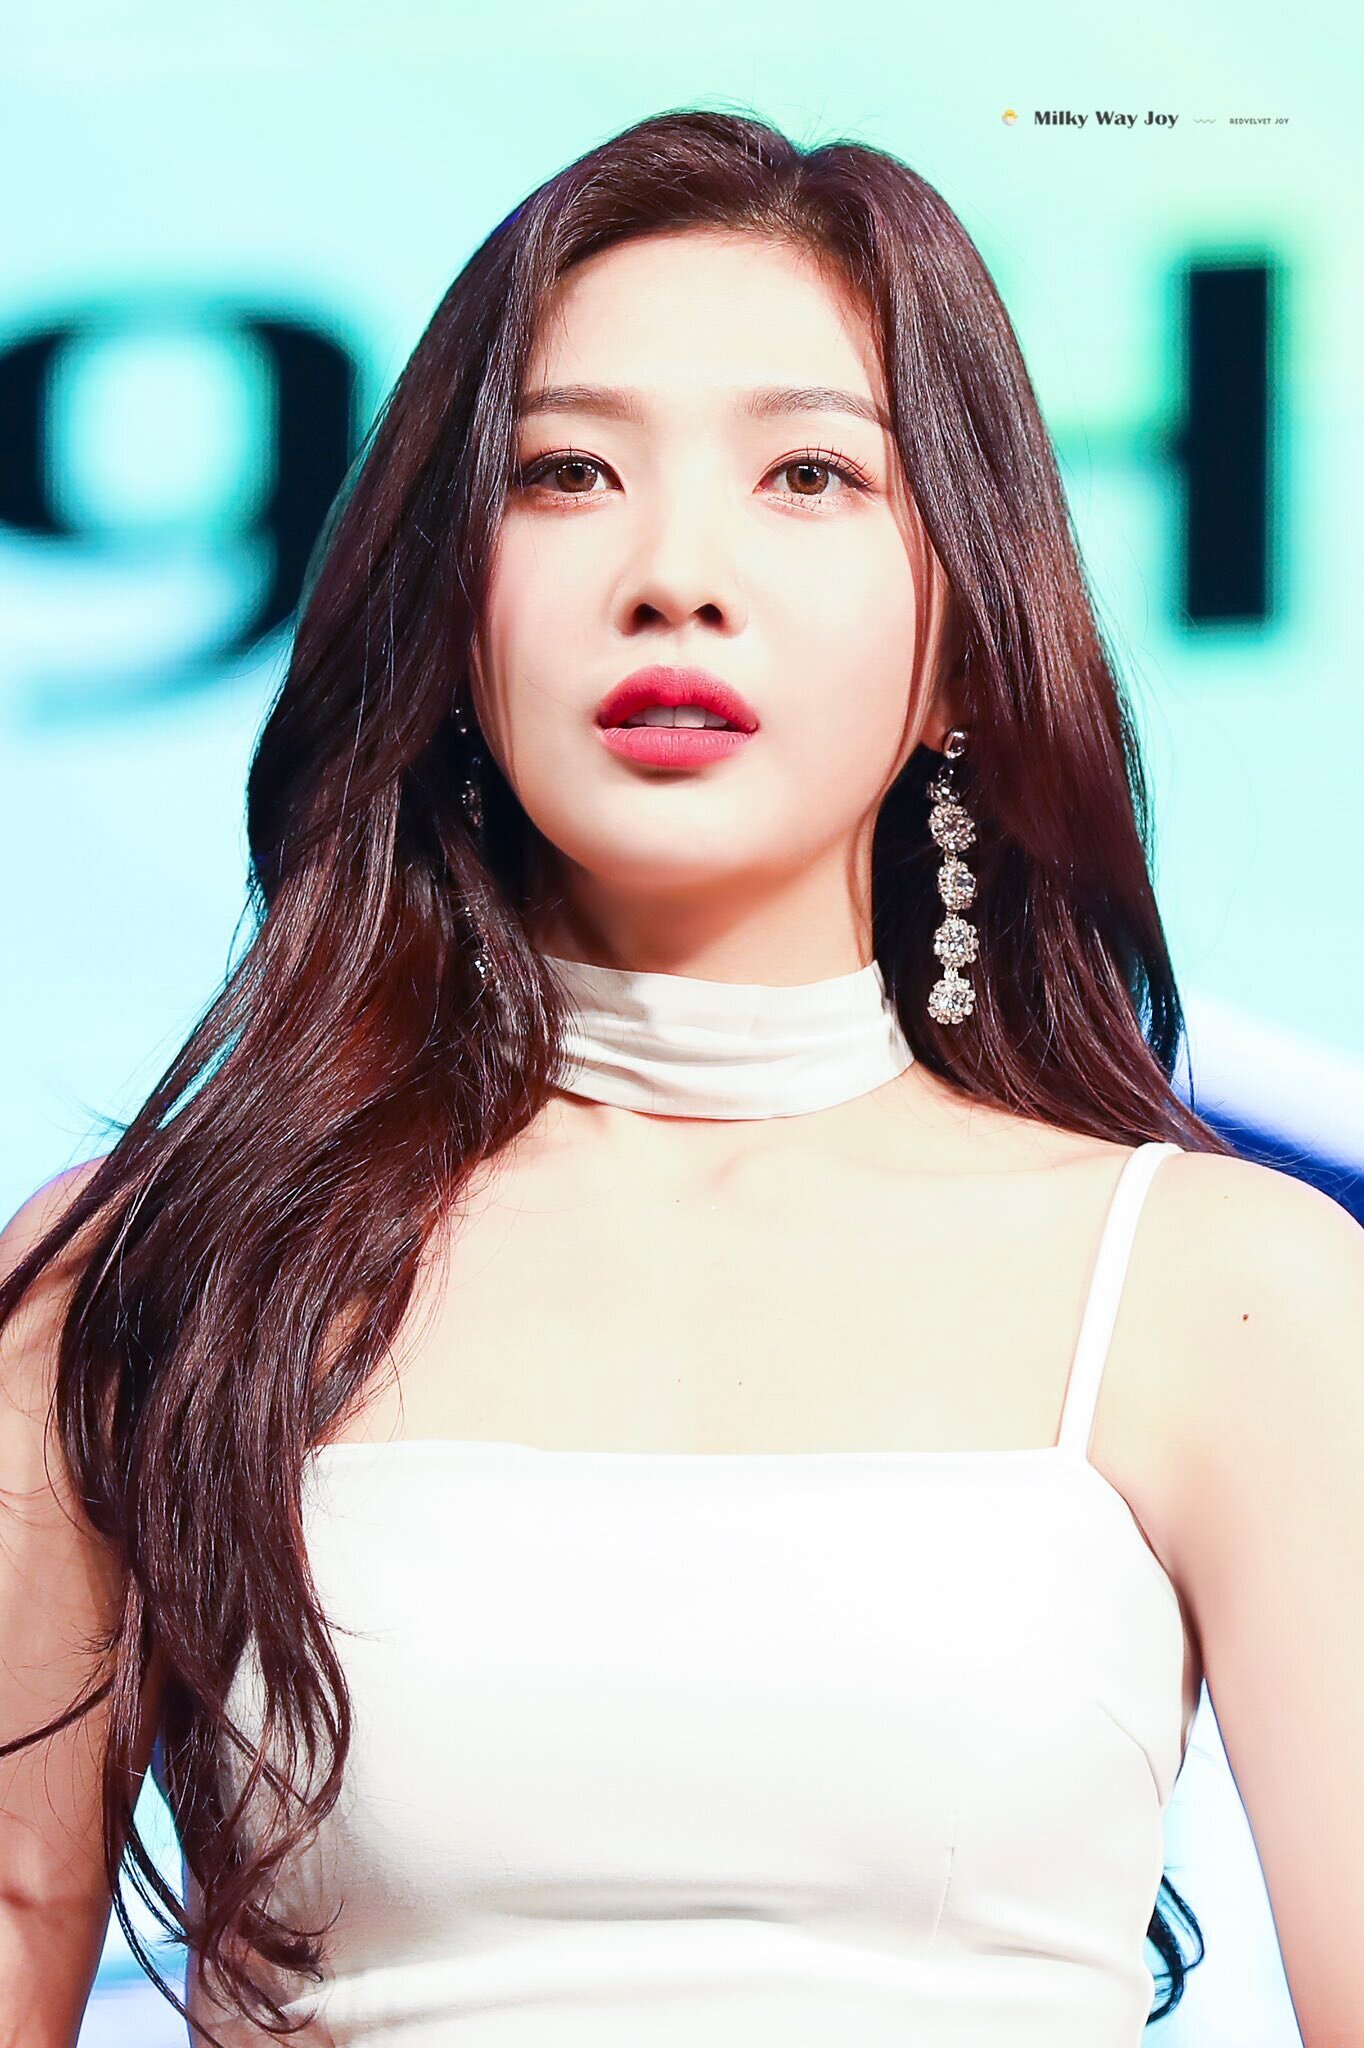 May 15, 2019 Red Velvet Joy | Kpopping